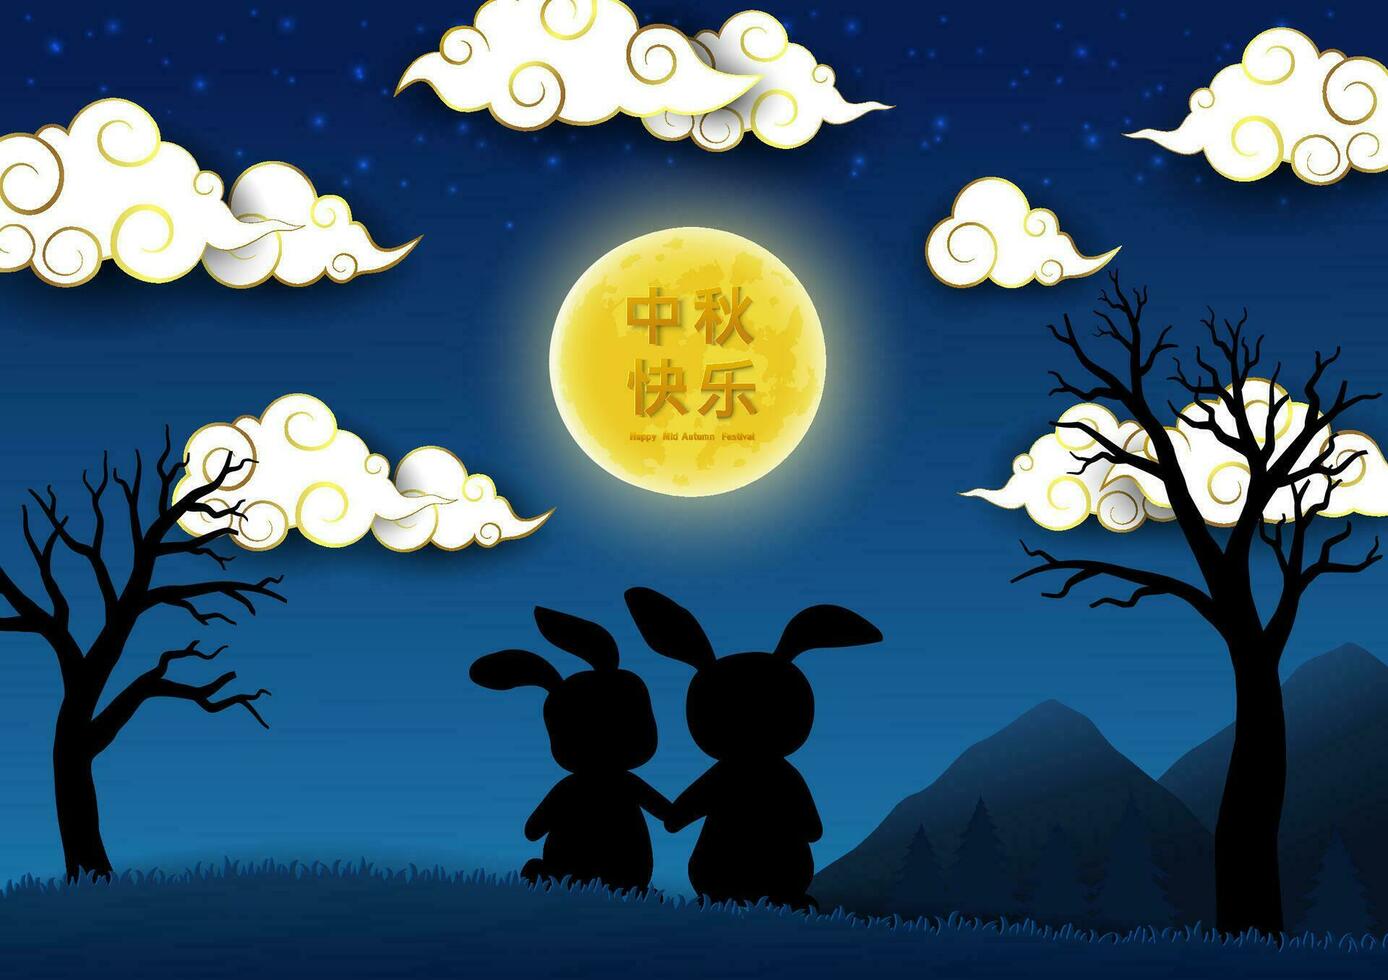 mitten höst eller måne festival, fira tema med söt kaniner och full måne på molnig natt bakgrund, kinesiska Översätt betyda mitten höst festival vektor